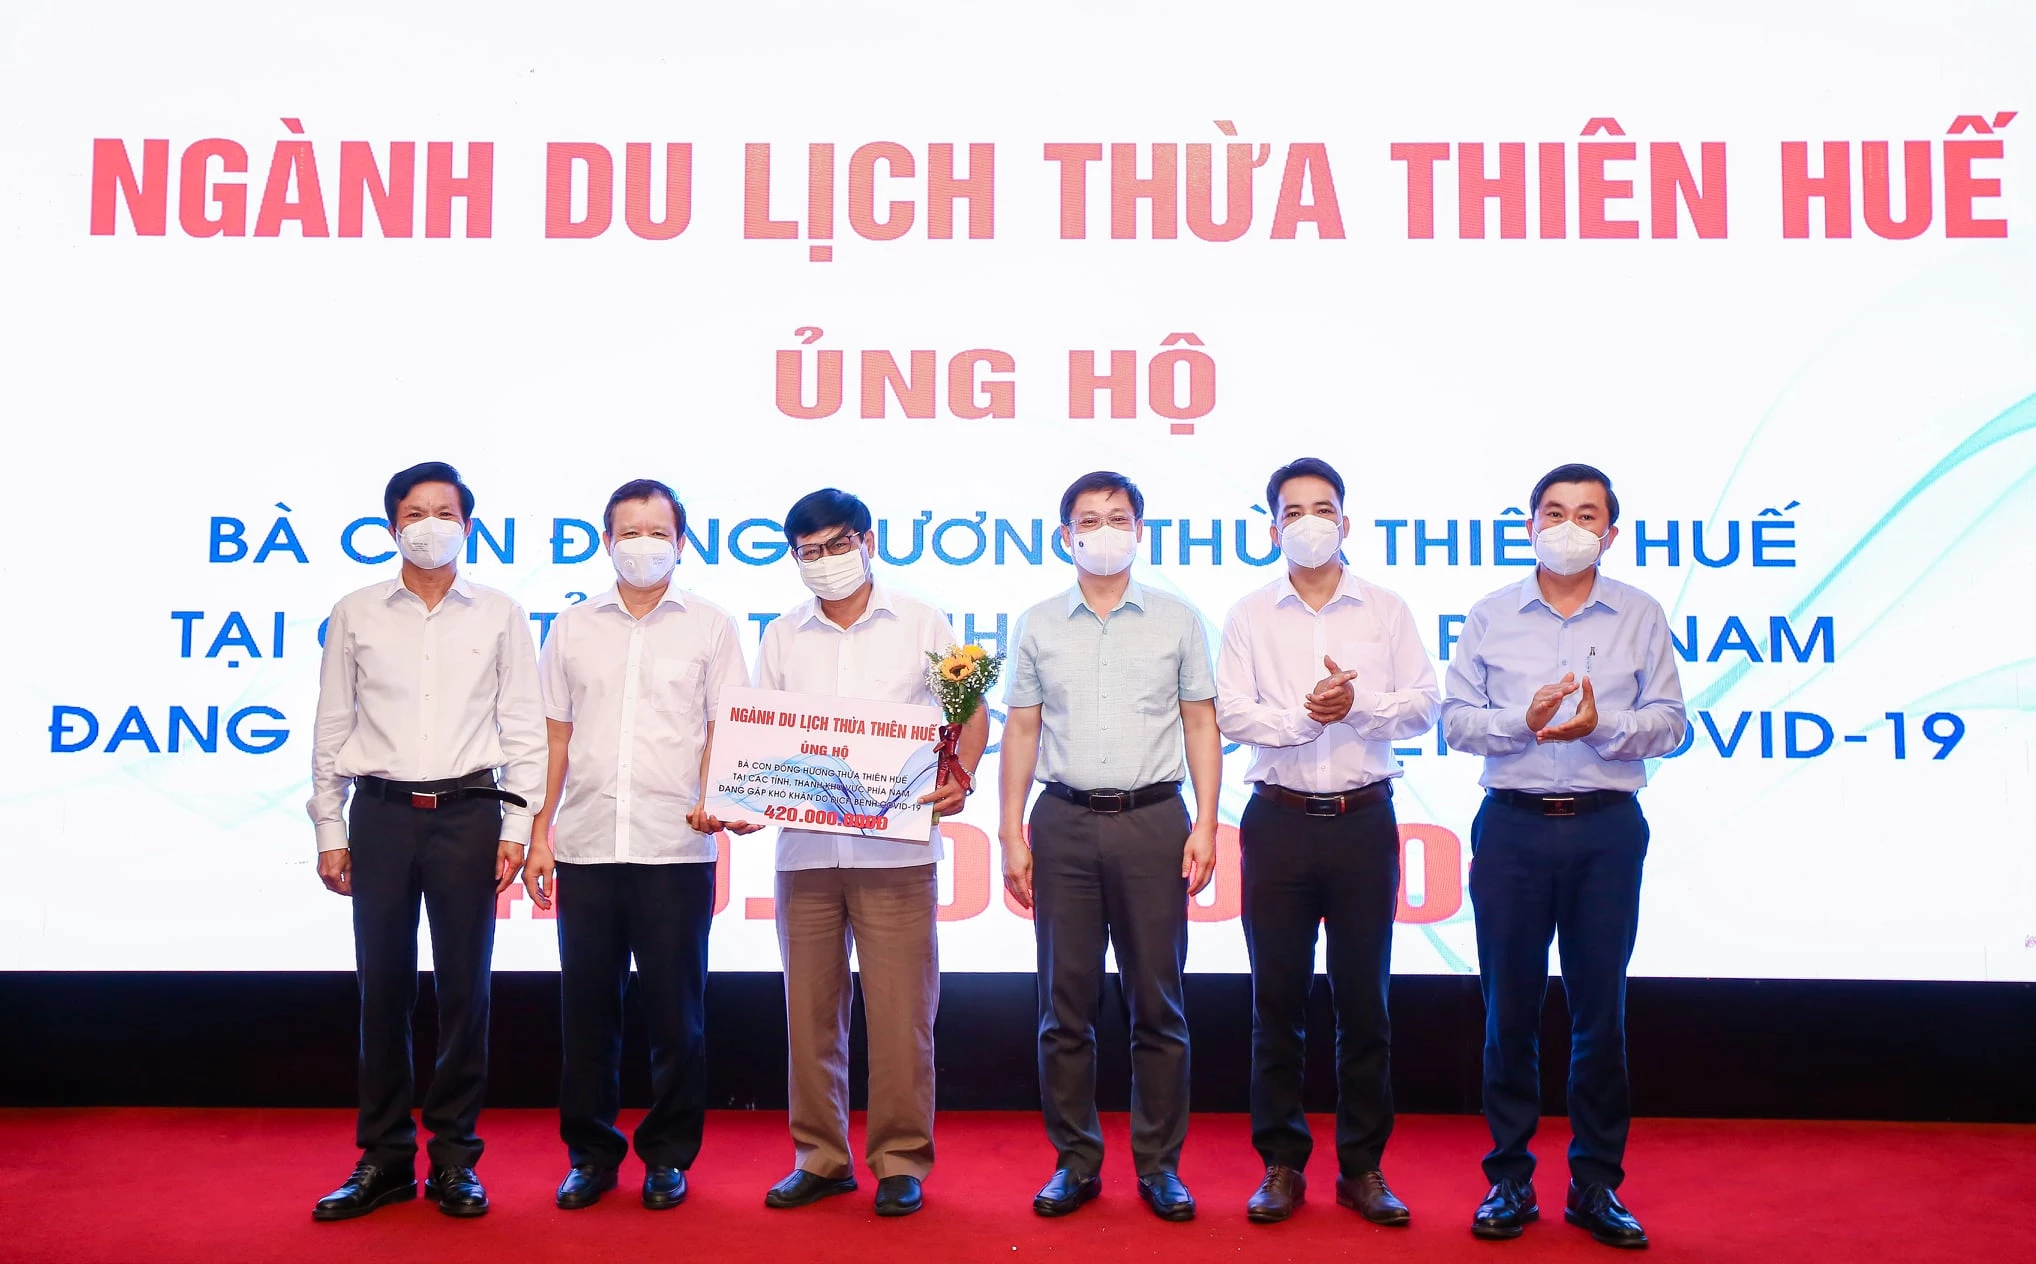 44 đơn vị, cá nhân trong ngành du lịch, dịch vụ tỉnh Thừa Thiên Huế ủng hộ kinh phí và vật chất với trị giá 455 triệu đồng để hỗ trợ đồng hương tại các tỉnh phía Nam đang gặp khó khăn do dịch COVID-19. 